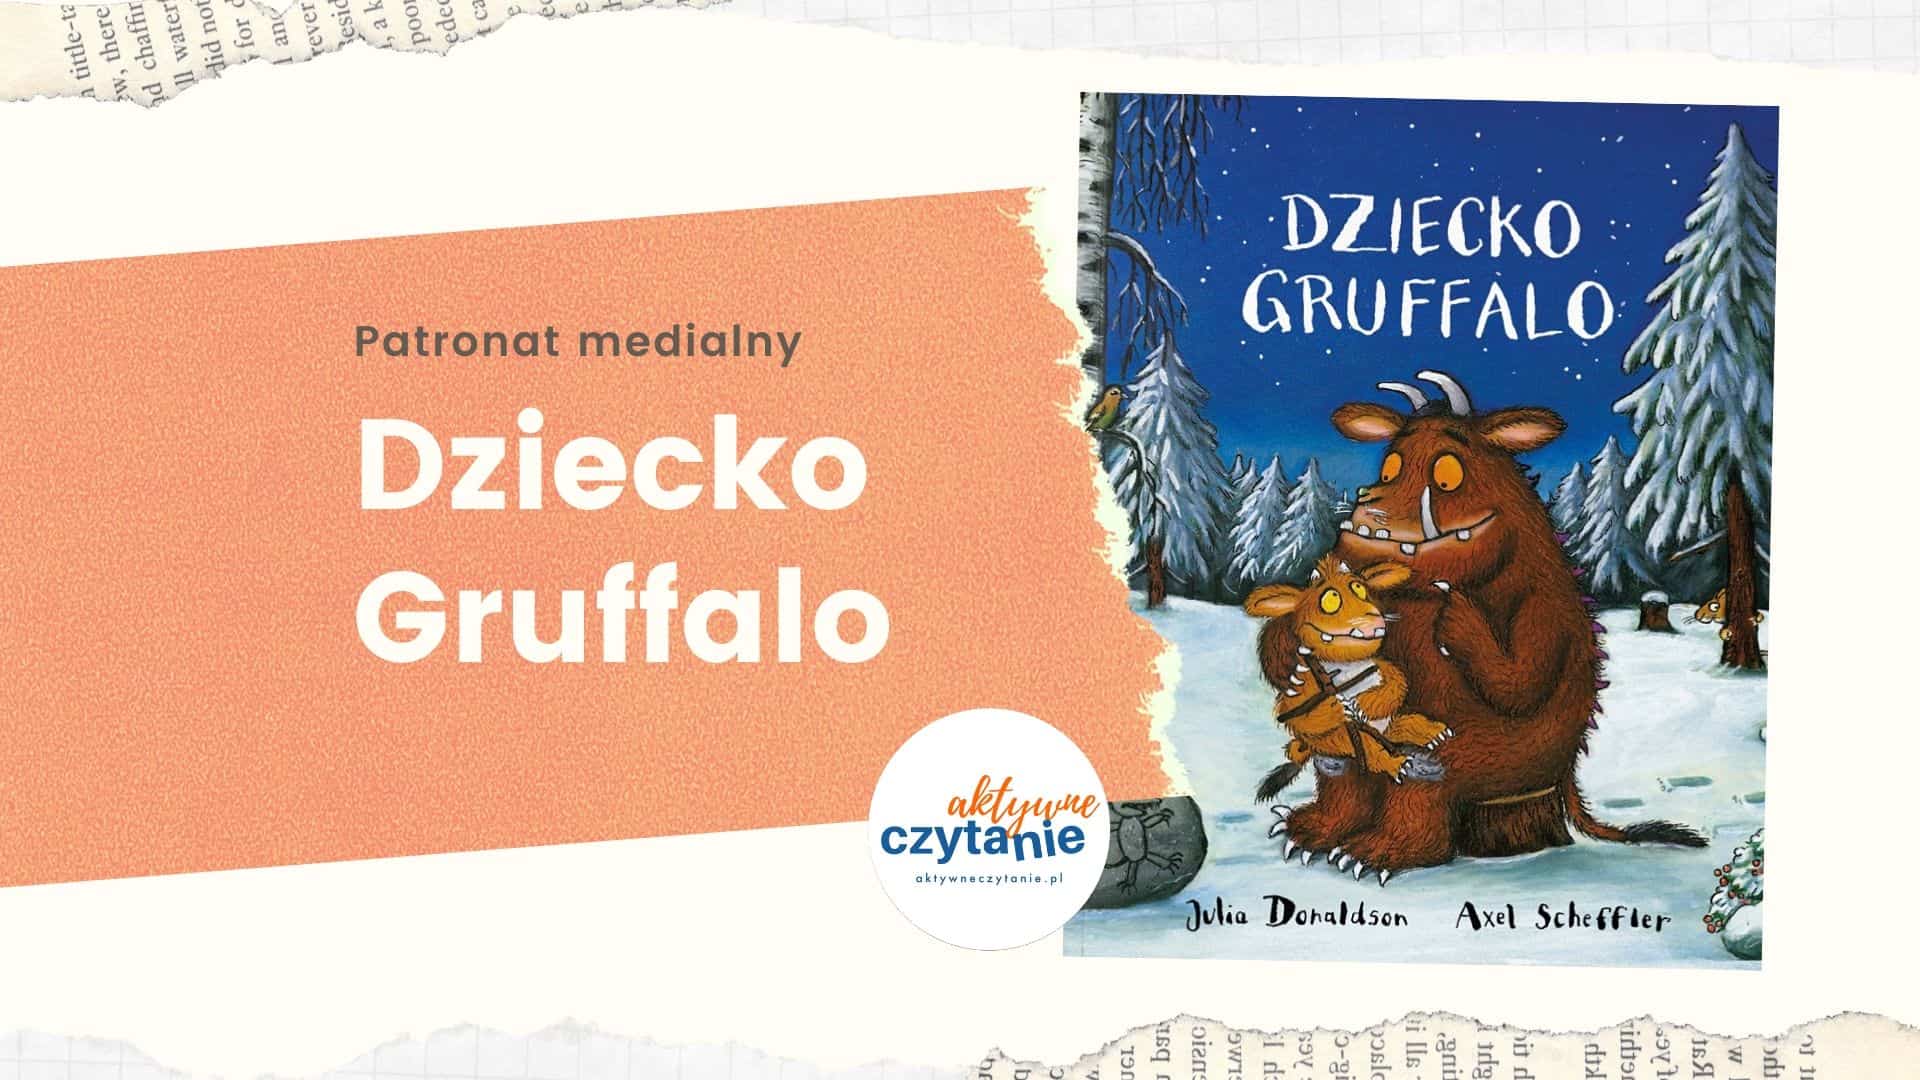 Dziecko Gruffalo recenzja ksiązki dla dzieci aktywne czytanie